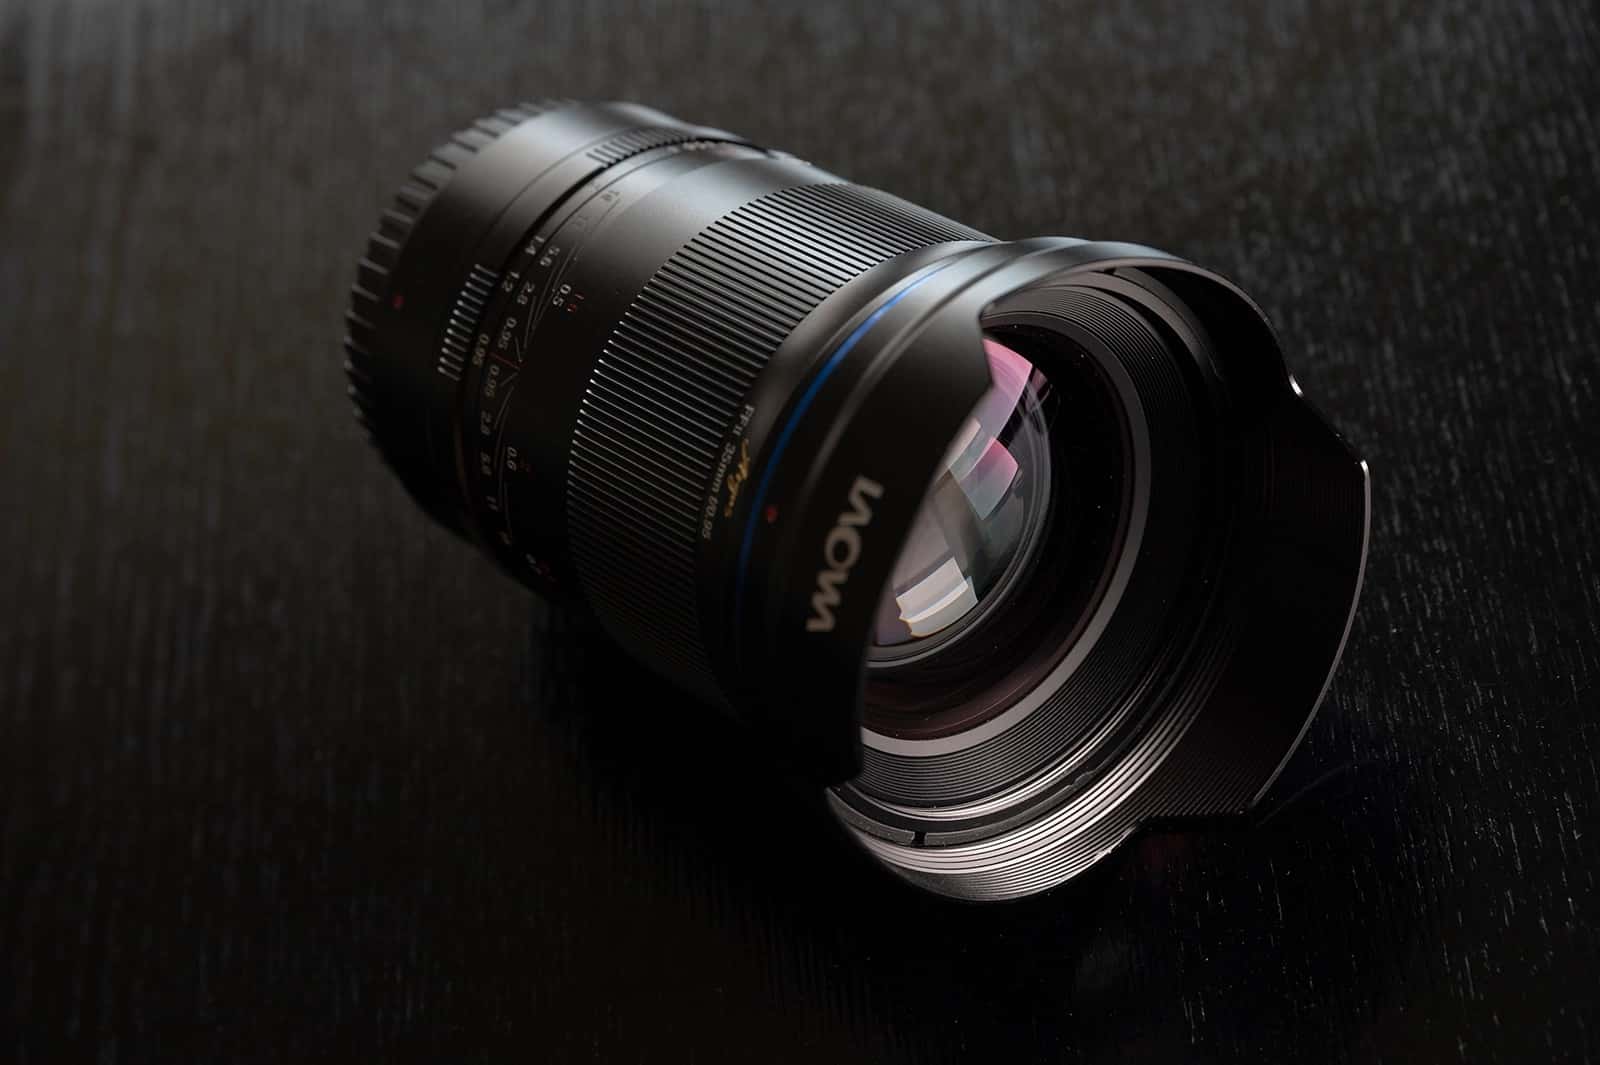 Laowa Argus 35mm F0.95 ra mắt, ống kính khẩu độ mở lớn nhất cho máy ảnh Full Frame